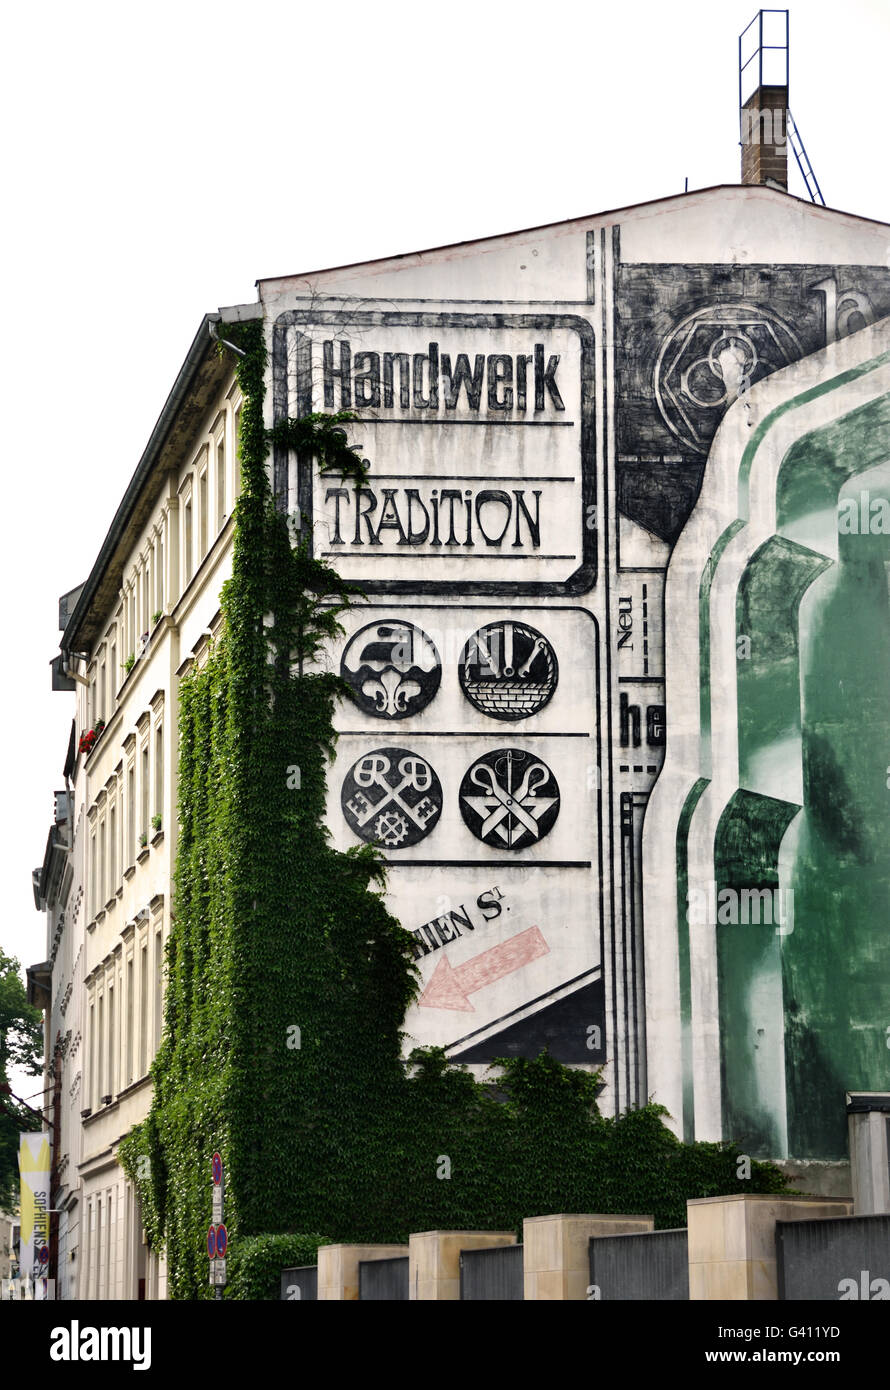 Handwerk Tradition Hackescher Markt - Hofe Bereich Berlin Deutschland Stockfoto